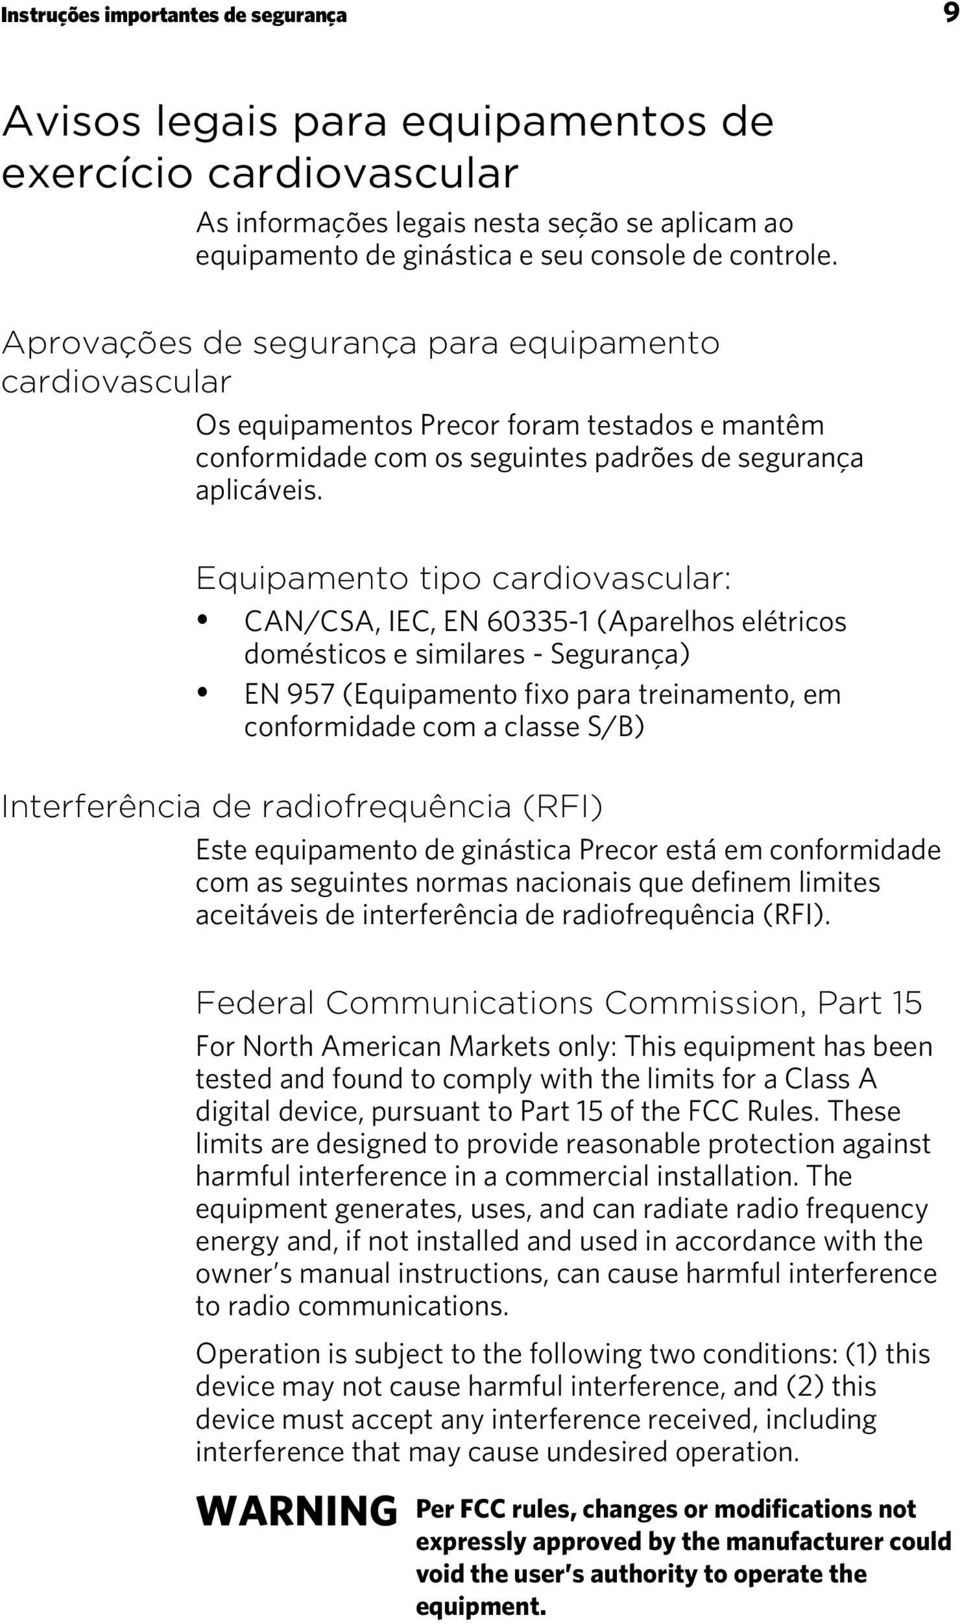 Equipamento tipo cardiovascular: CAN/CSA, IEC, EN 60335-1 (Aparelhos elétricos domésticos e similares - Segurança) EN 957 (Equipamento fixo para treinamento, em conformidade com a classe S/B)